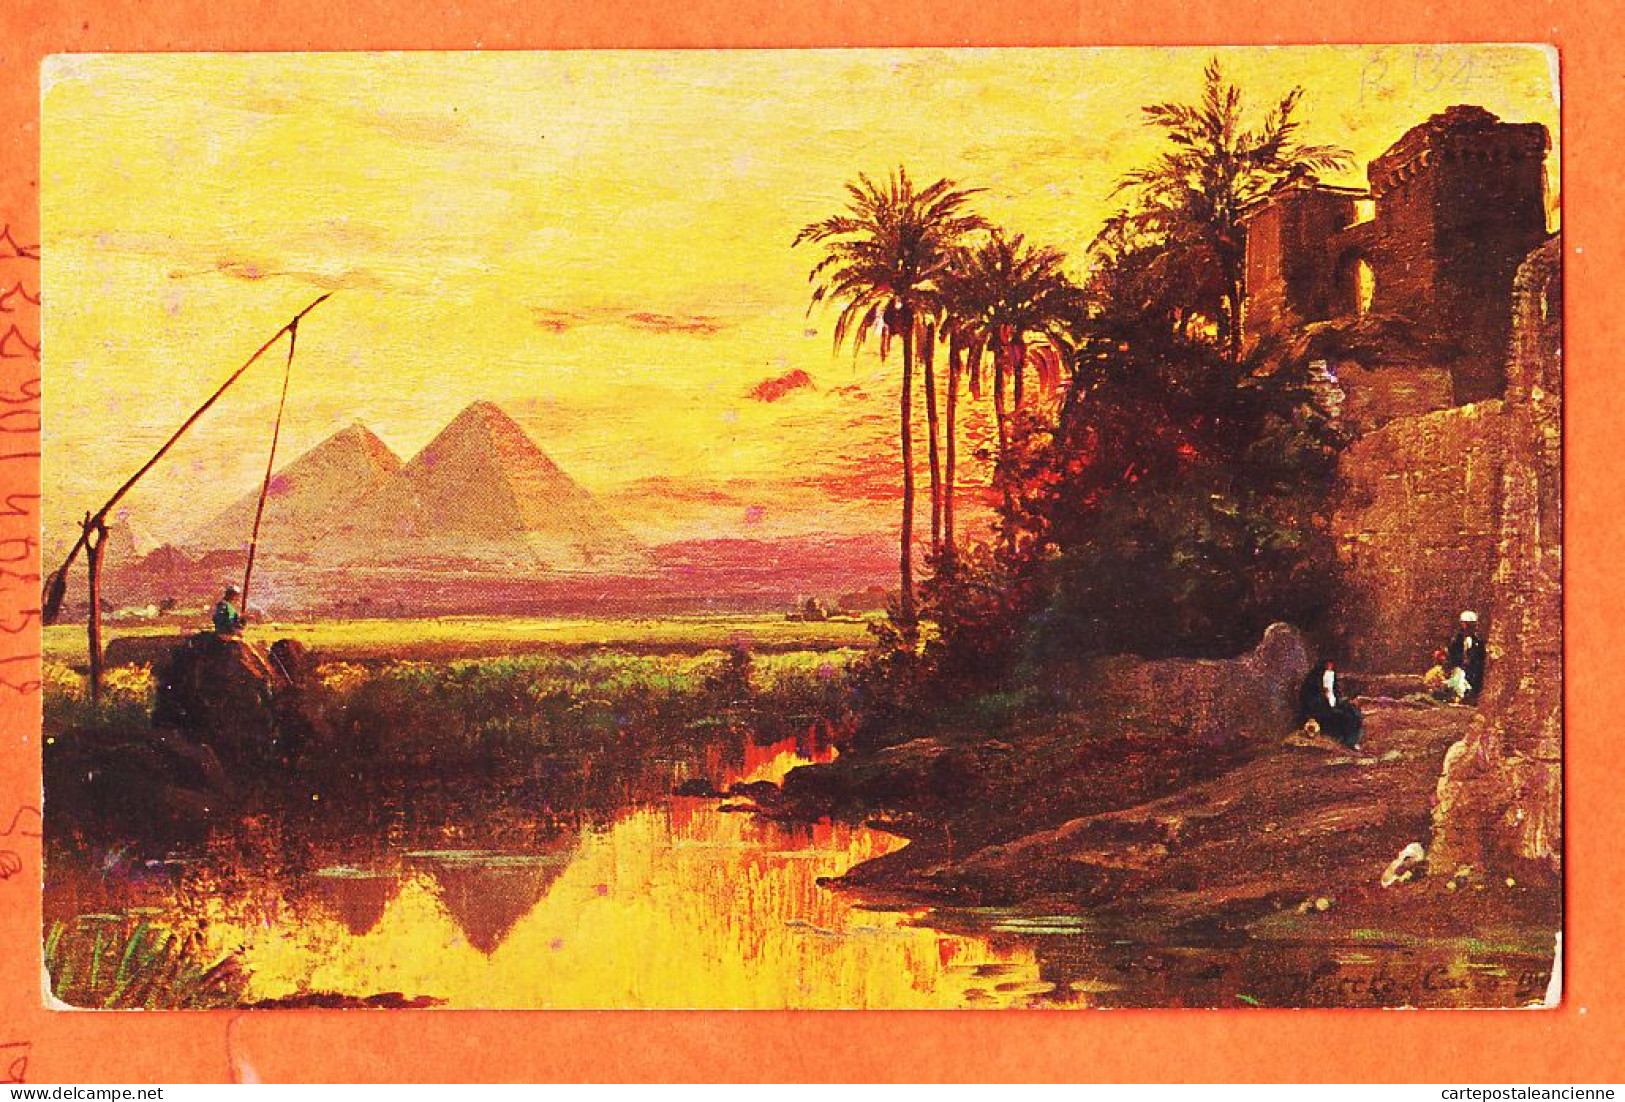 09956 / ⭐ (•◡•) Ägypten ◉ GIZEH Pyramides ◉ Egypte Piramids Pyramides 1905s ◉ ROMMLER JONAS Dresden R-134 Egypt - Guiza